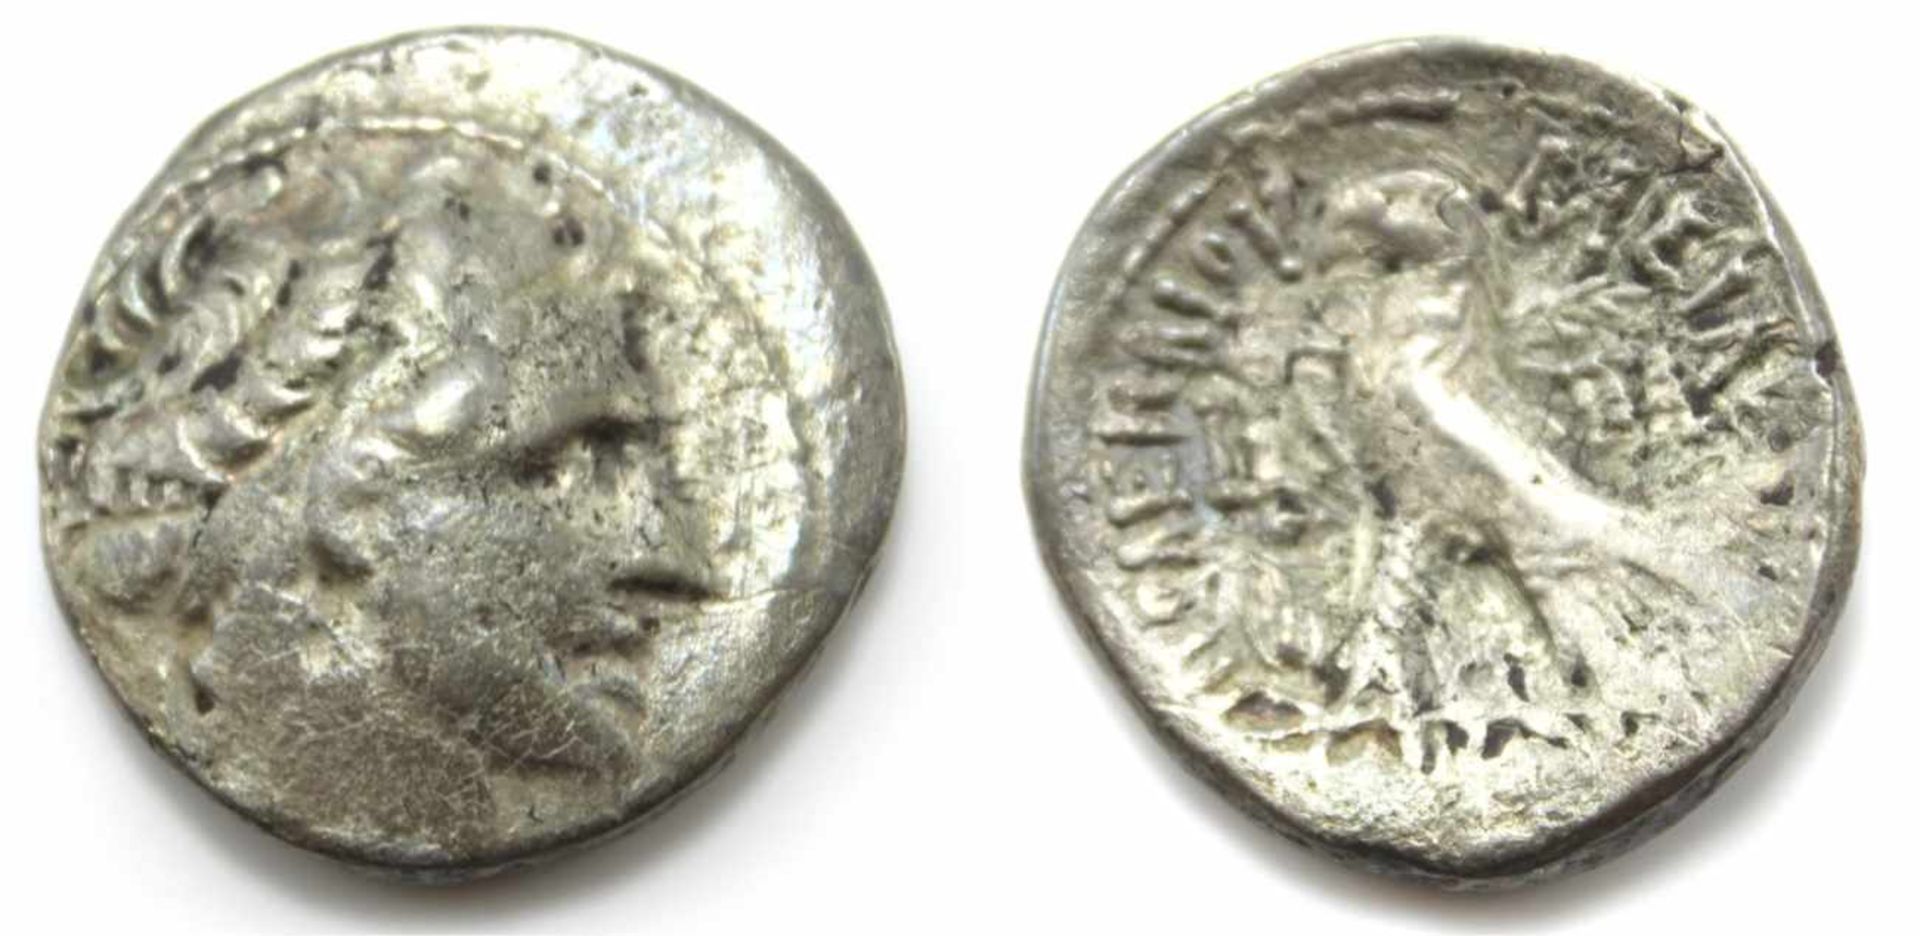 Münze - Königreich Ägypten Tetradrachme, Silber, Vorderseite: Kopf des Ptolemaios VII, Rückseite: